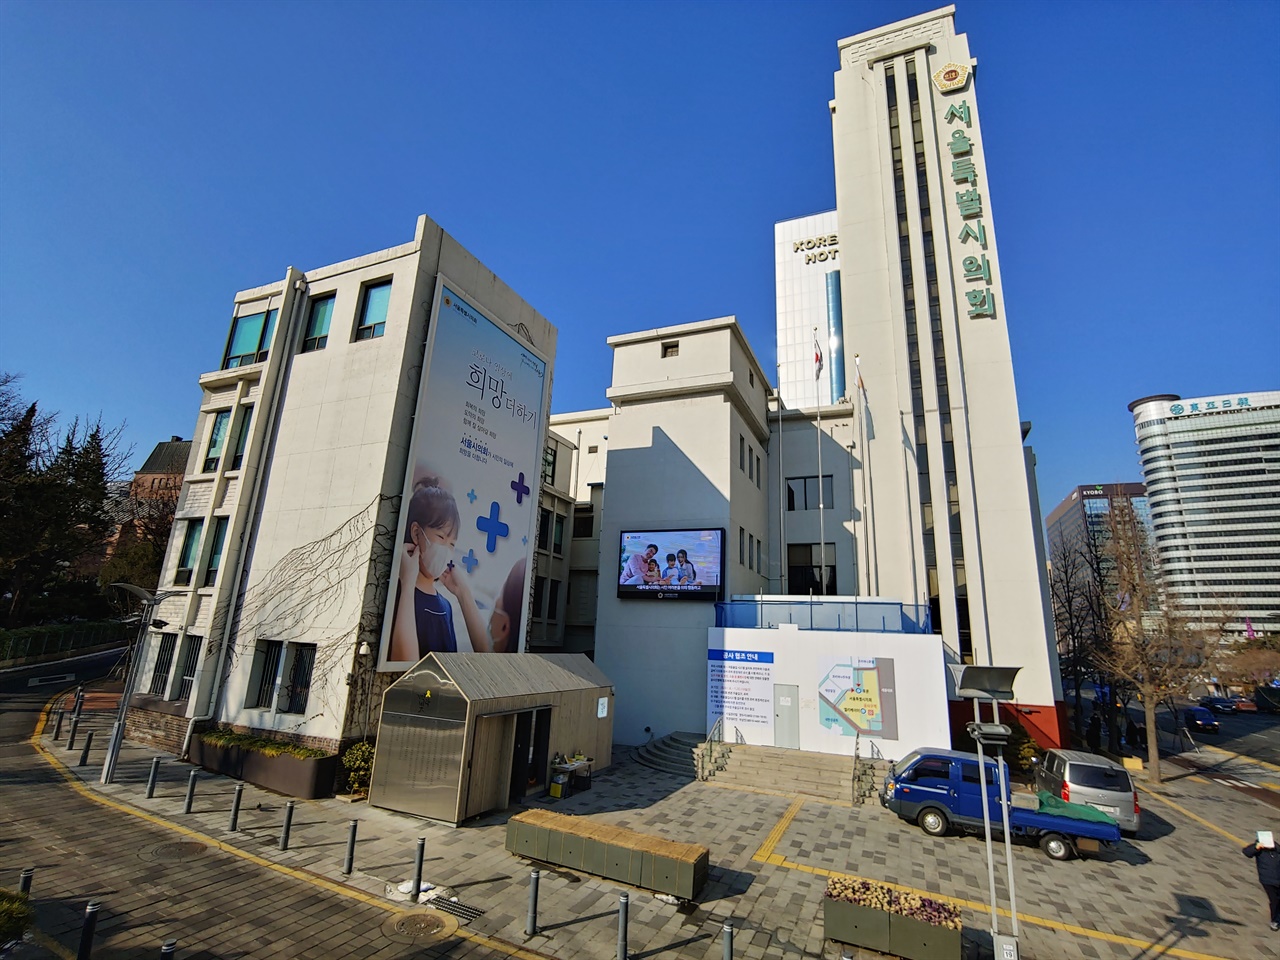 서울시의회로 사용 중인 집 주출입구 부위다. 영욕의 현대사를 떠 안으며, 그나마 비교적 잘 보존된 경우다.